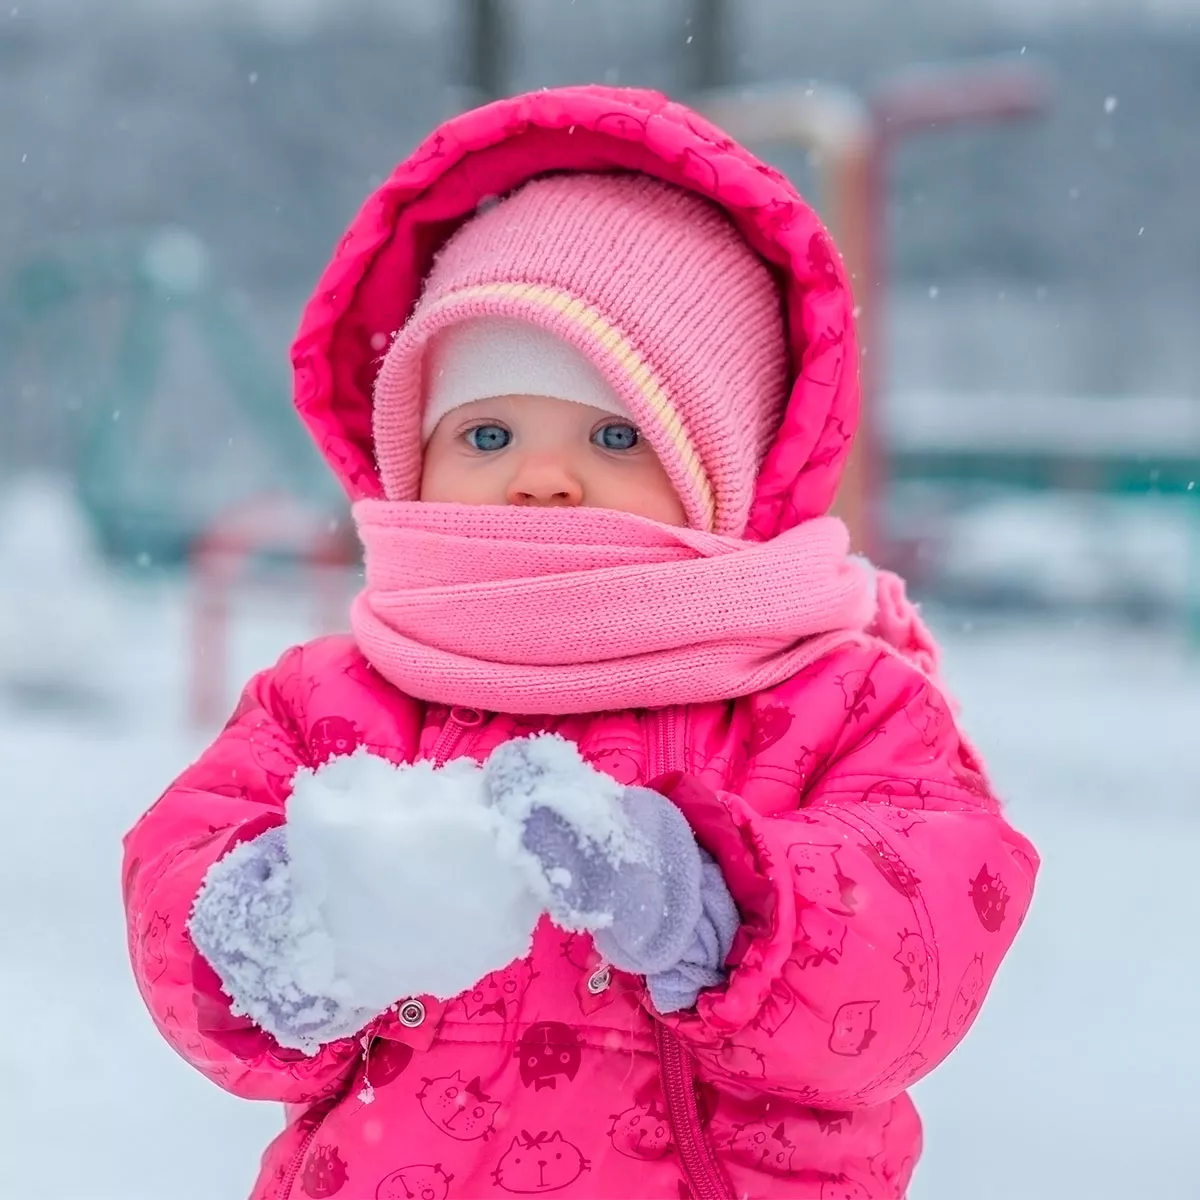 Cómo vestir a un bebé si hace frío? ¡Toma nota!